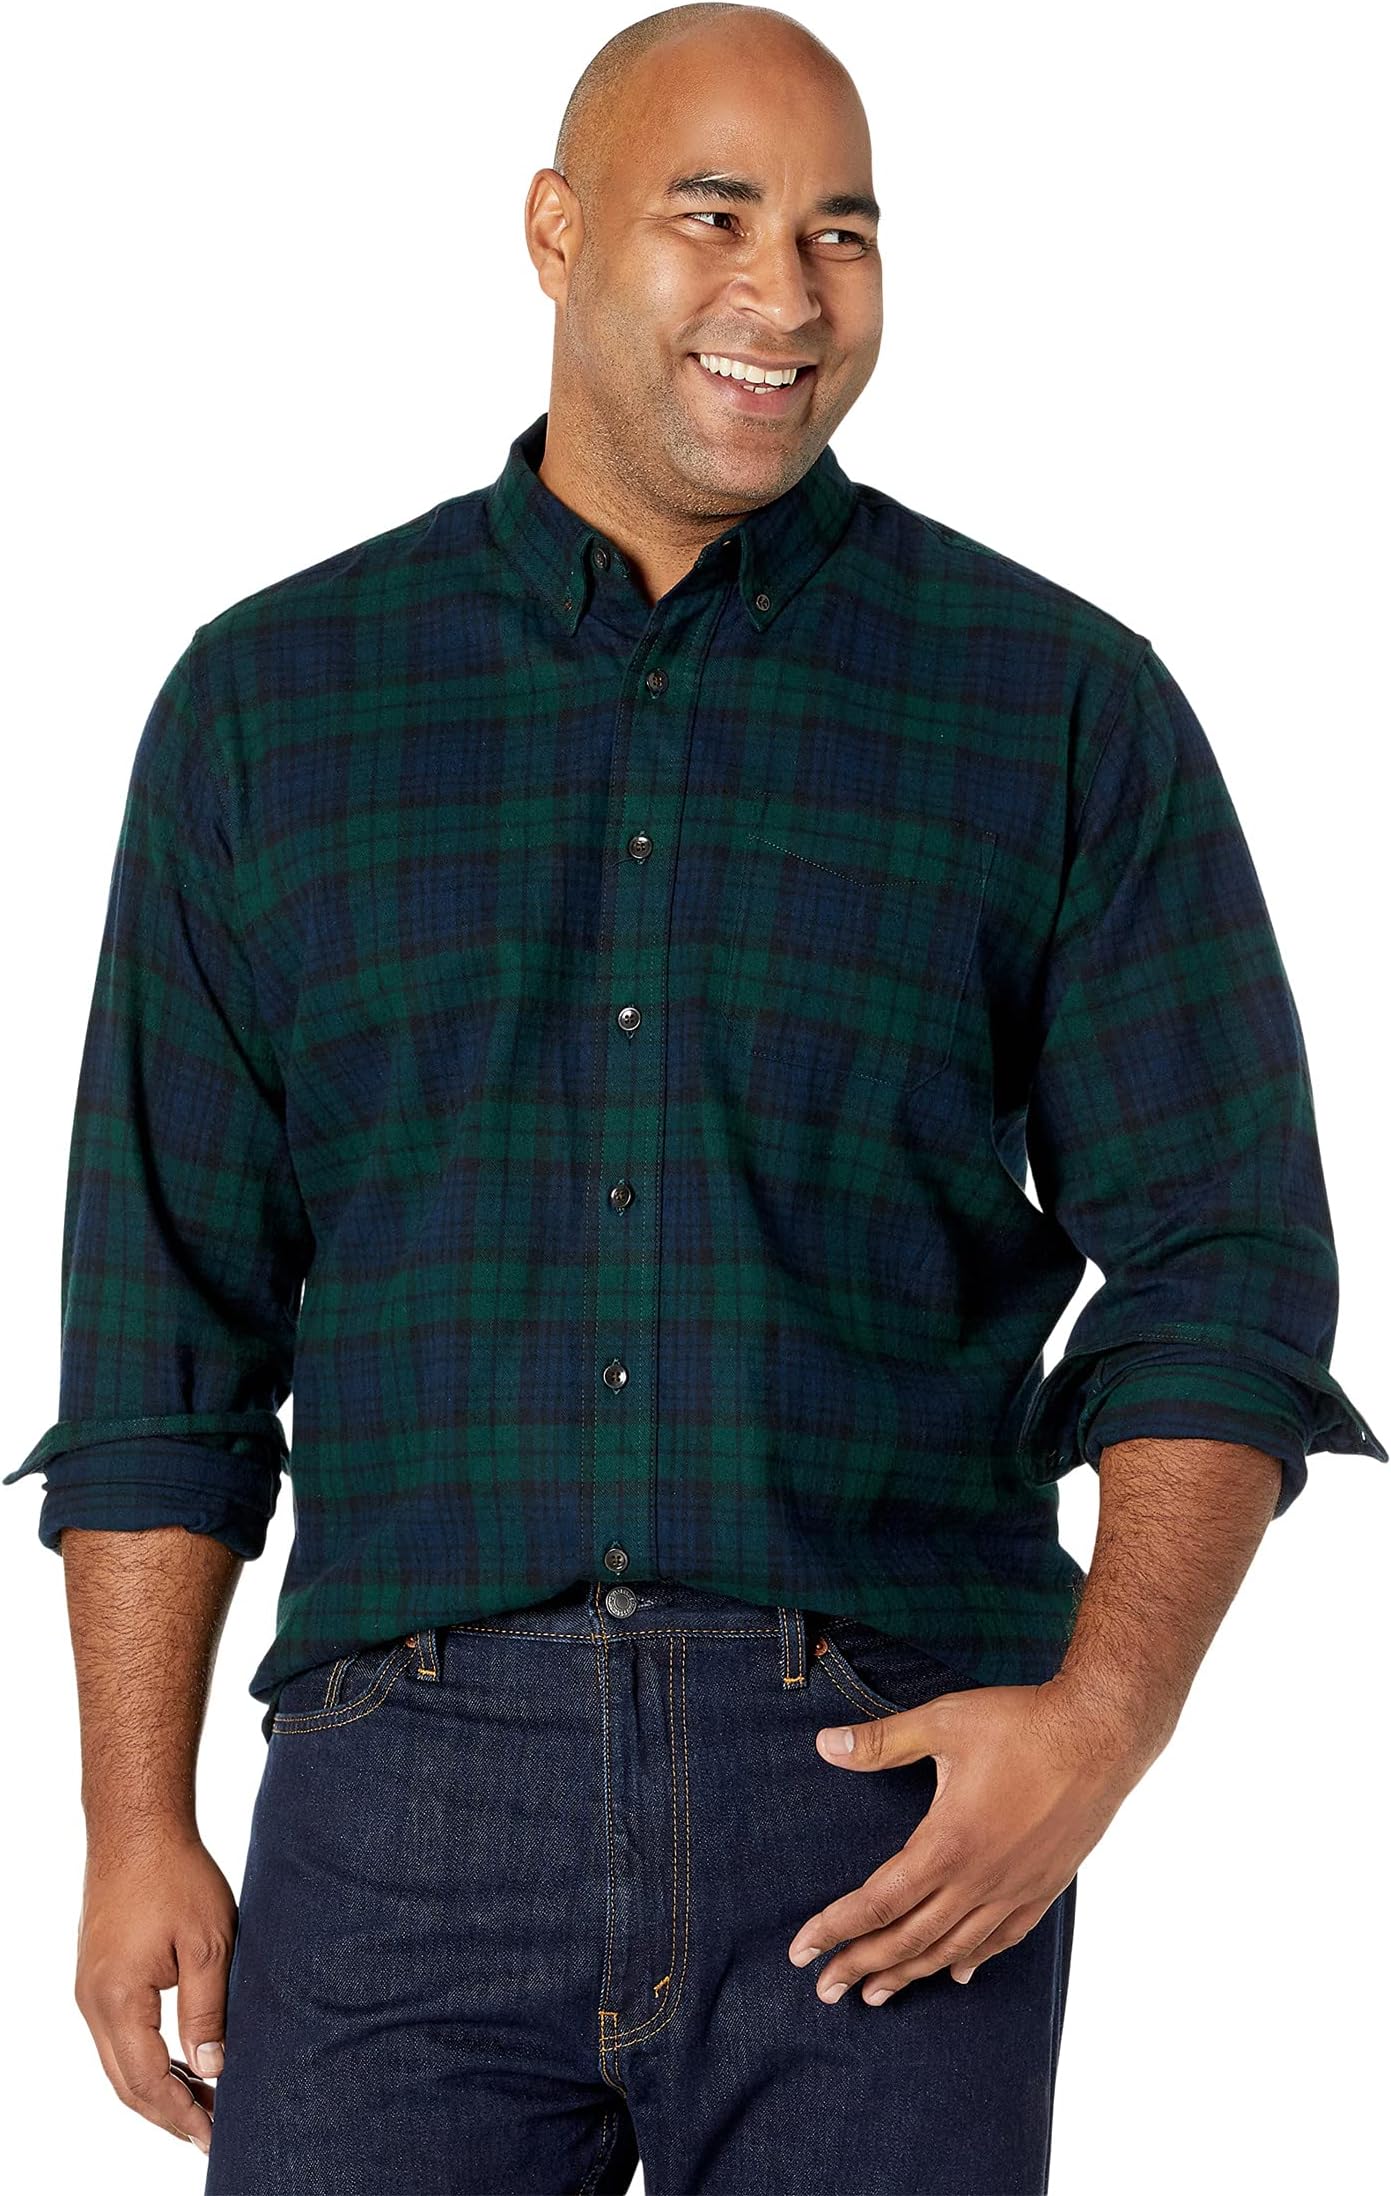 цена Рубашка традиционного кроя из шотландской фланели в шотландскую клетку – высокий L.L.Bean, цвет Black Watch